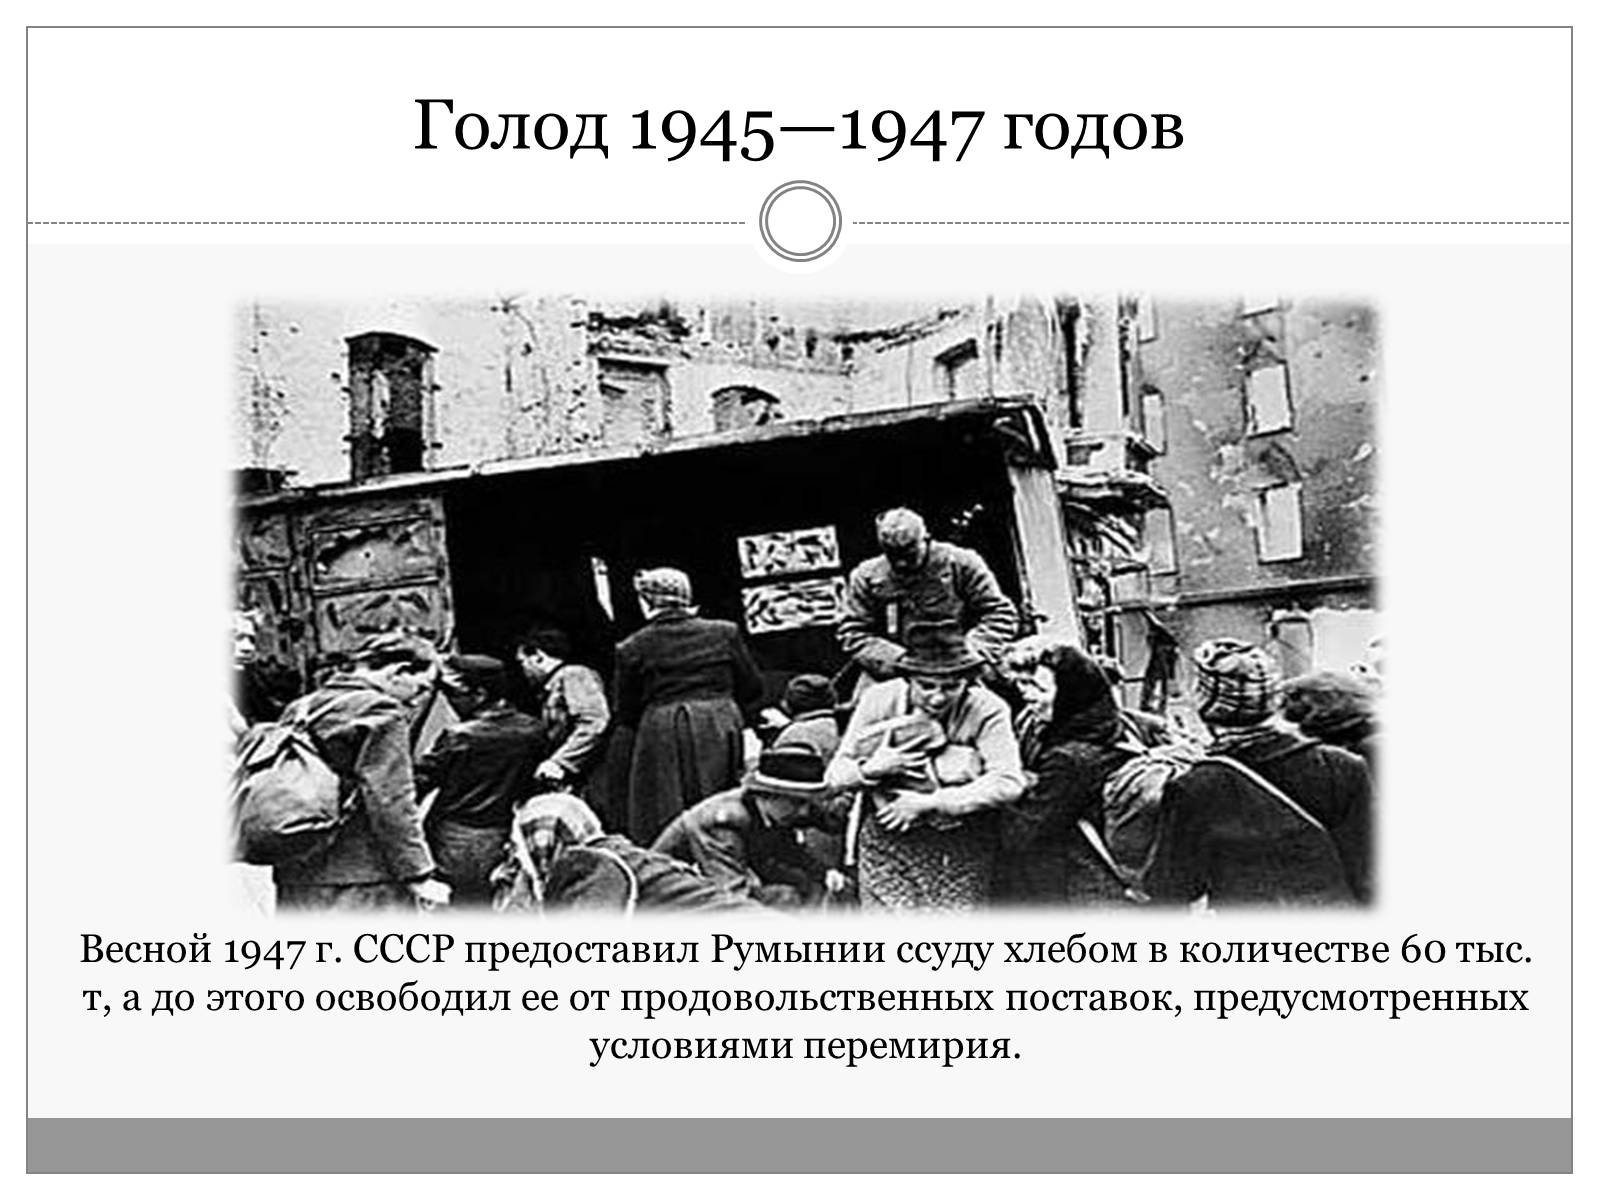 Голод на французский. Голод после войны 1946-1947 гг. Голод после войны 1946 СССР. Причины голода в СССР 1946-1947. Массовый голод на Украине 1947.